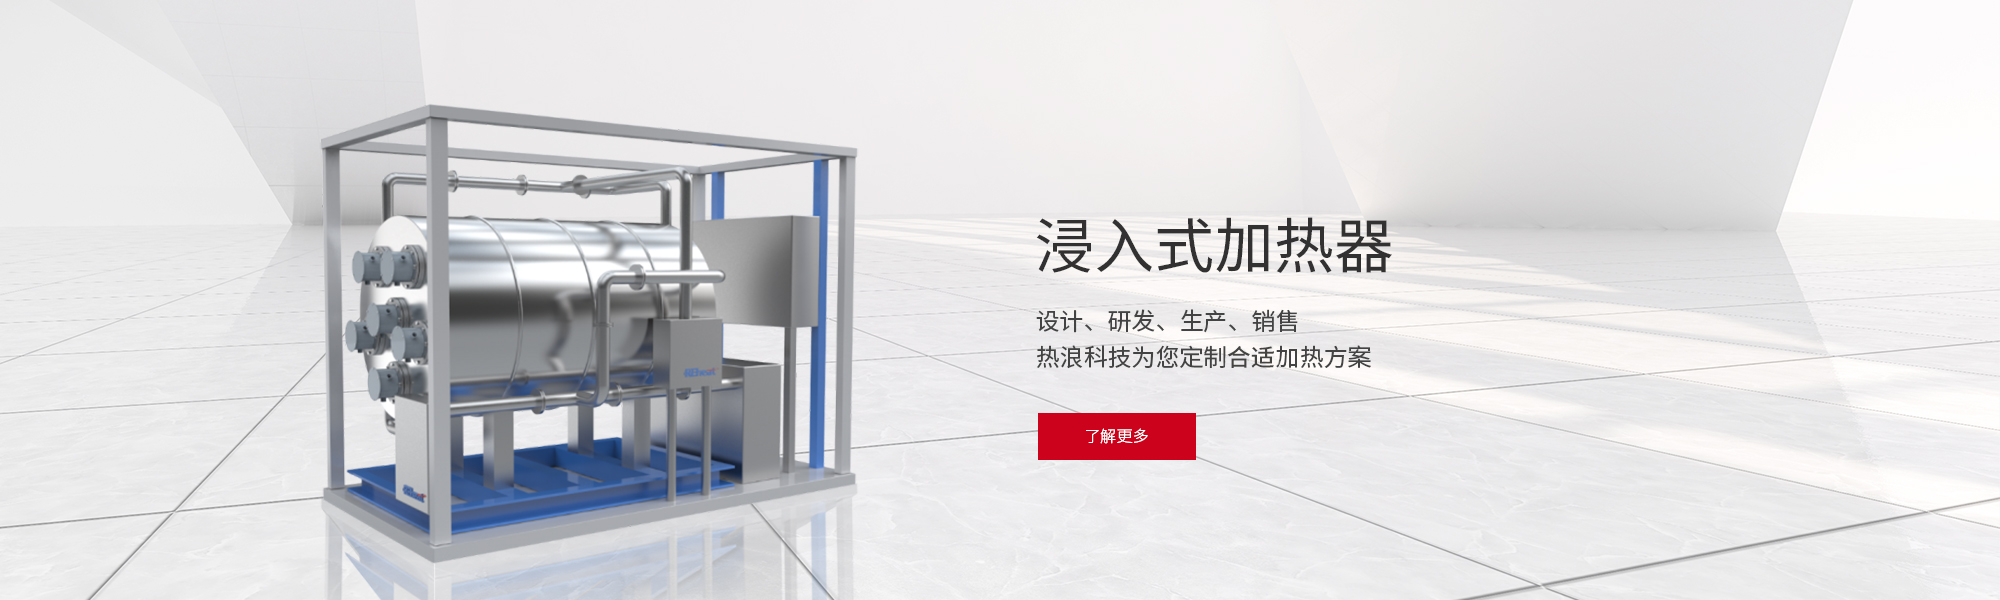 Suzhou Reheatek Electrical Technology Co.,Ltd.